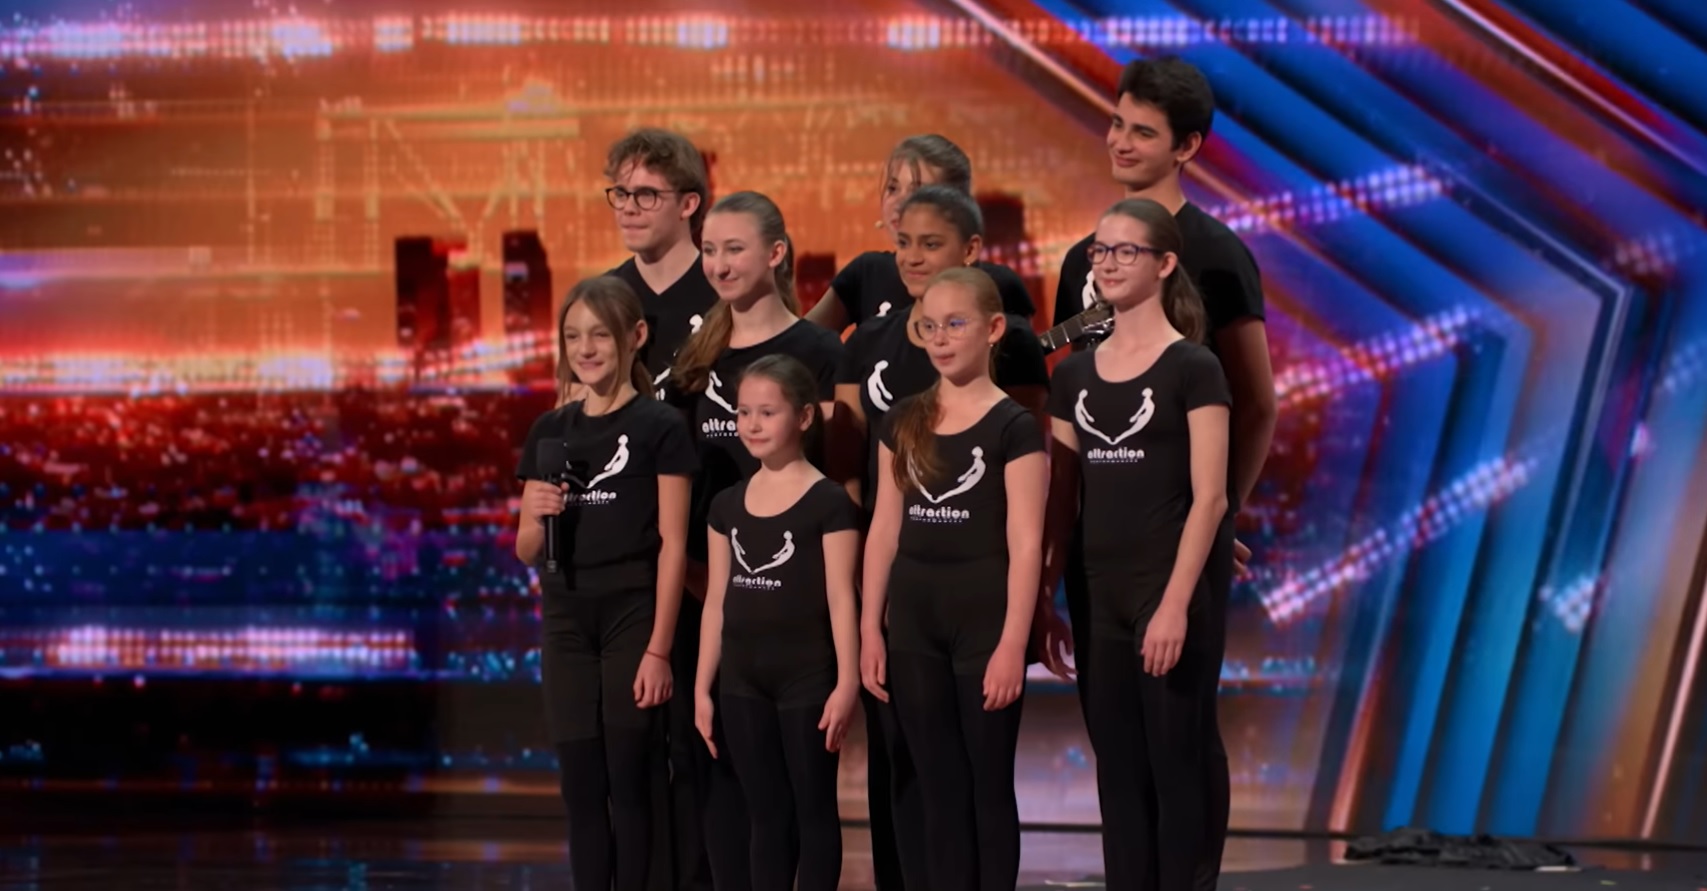 Letarolták a színpadot a magyar fiatalok, bejutottak az America’s Got Talent élő show-jába